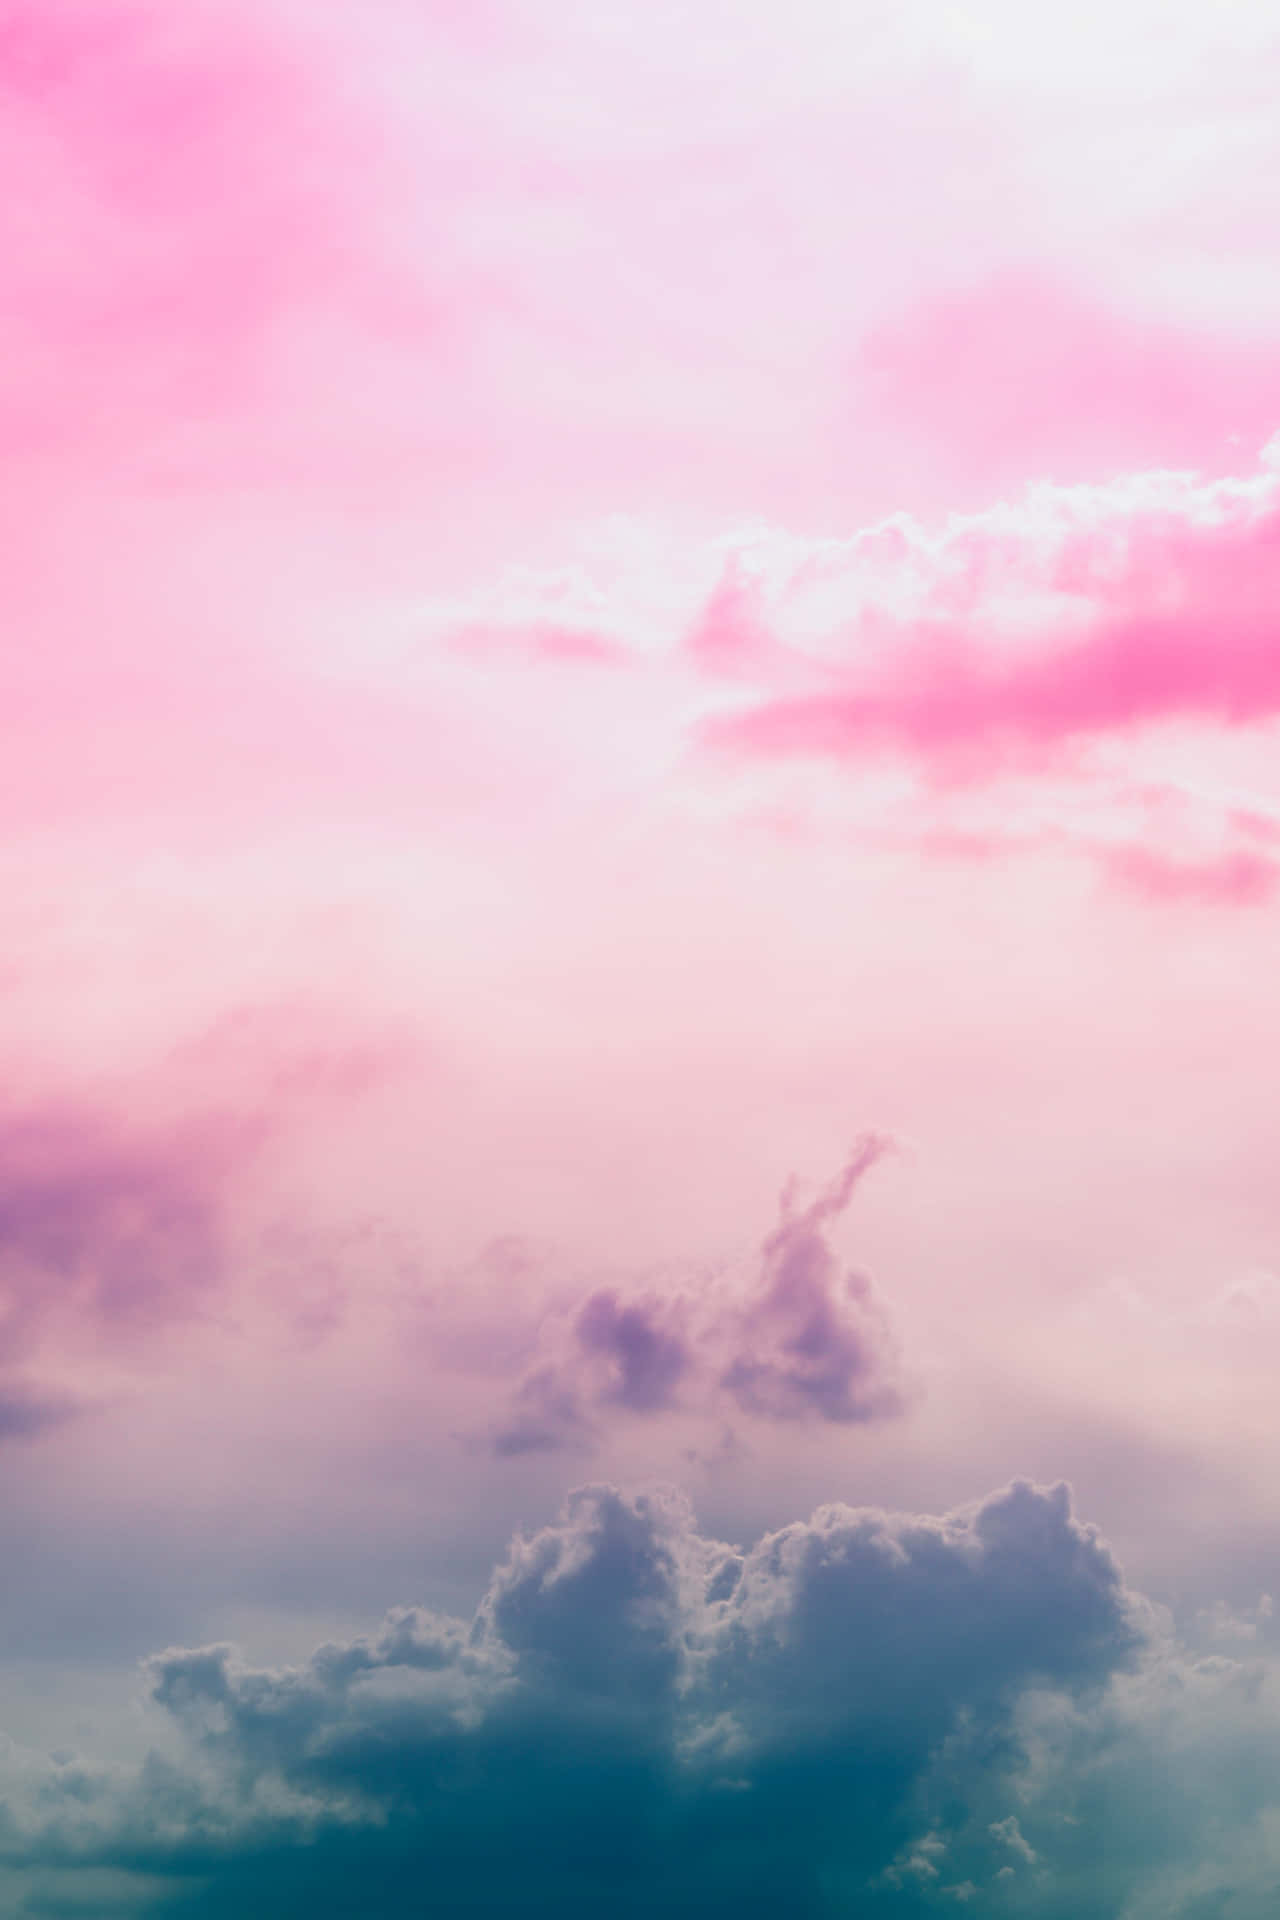 Et smukt syn af pink og blå skyer i himlen. Wallpaper